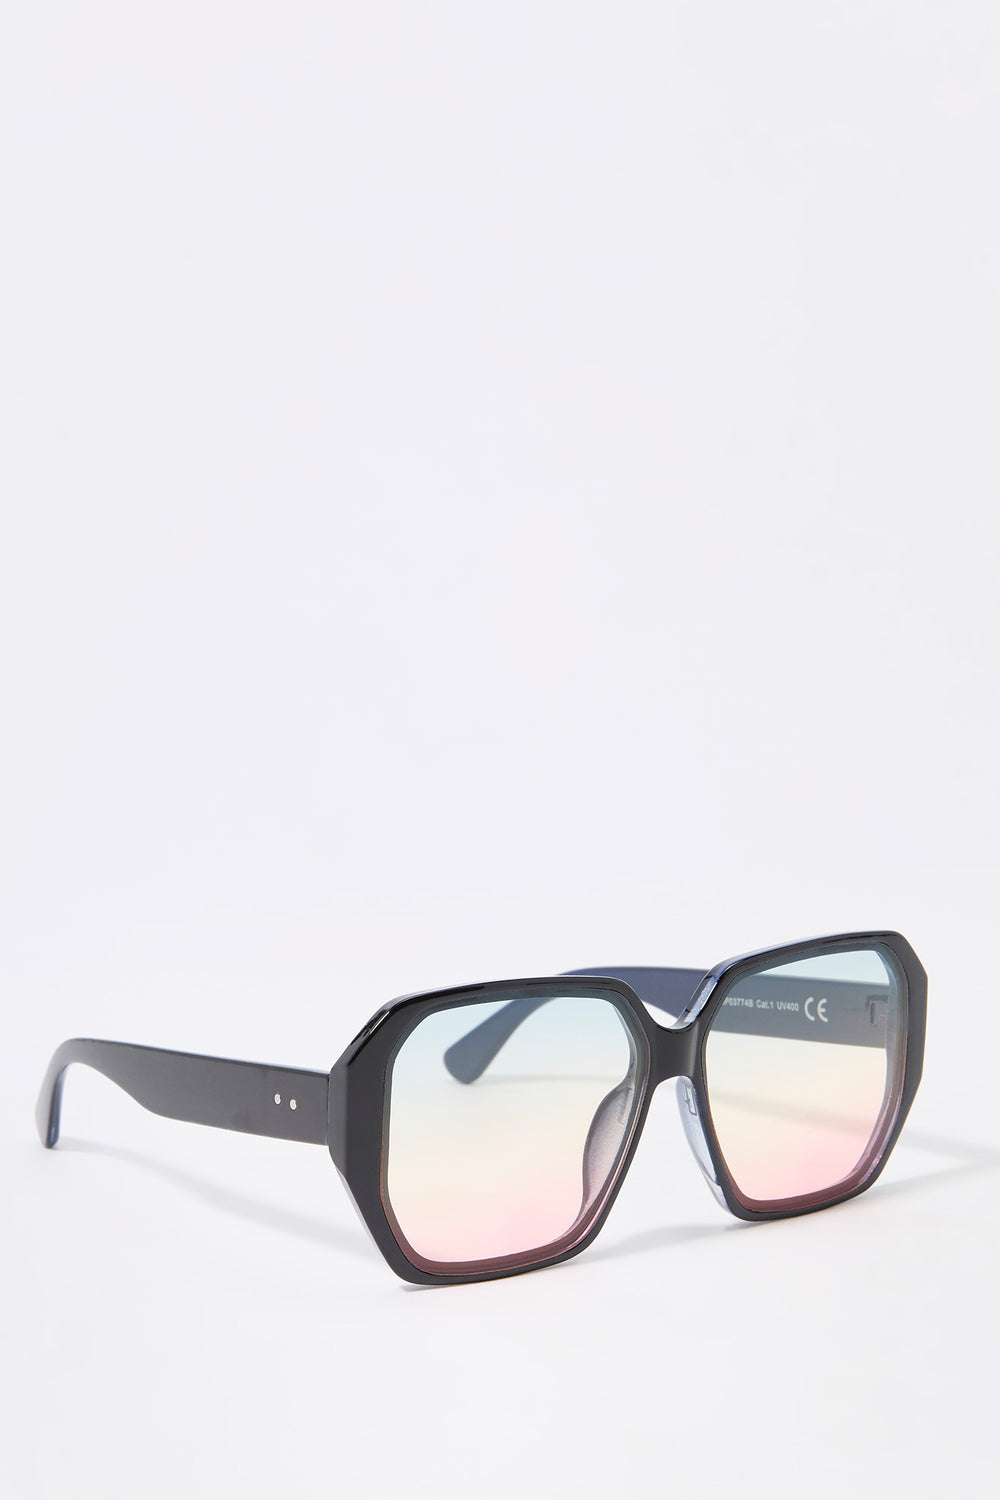 Geo Frame Ombre Sunglasses Geo Frame Ombre Sunglasses 8